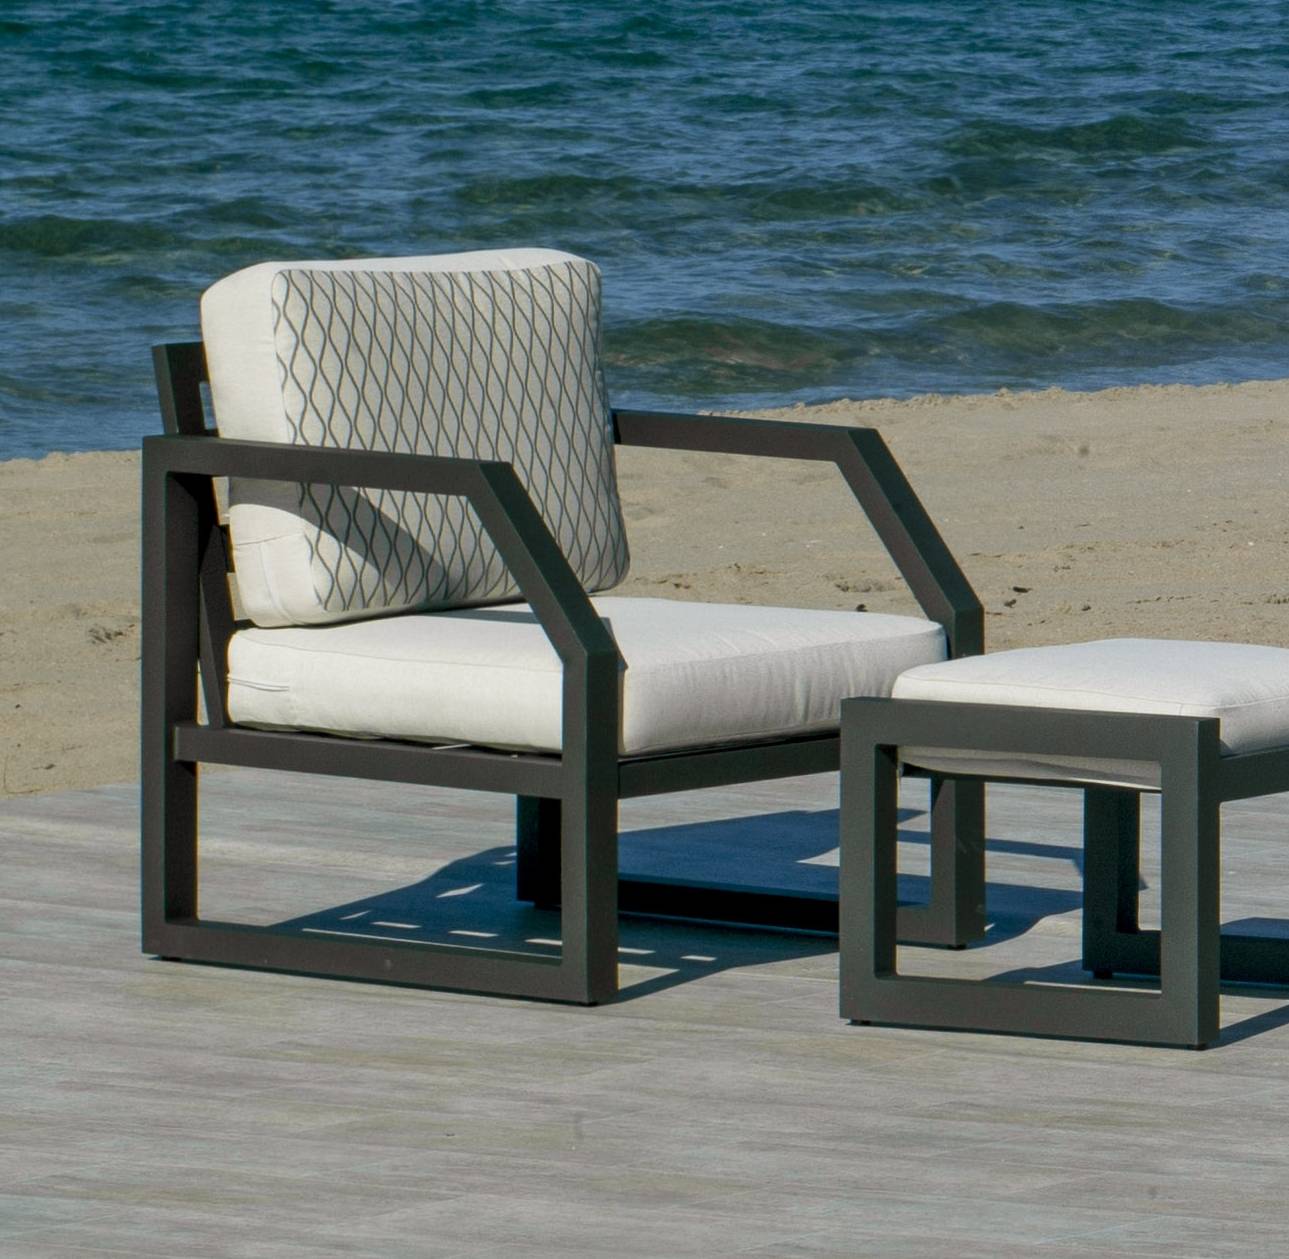 Set Aluminio Luxe Bellagio-10 - Conjunto aluminio: 1 sofá 3 plazas + 2 sillones + mesa de centro + 2 taburetes. Colores: blanco, antracita, champagne, plata o marrón.